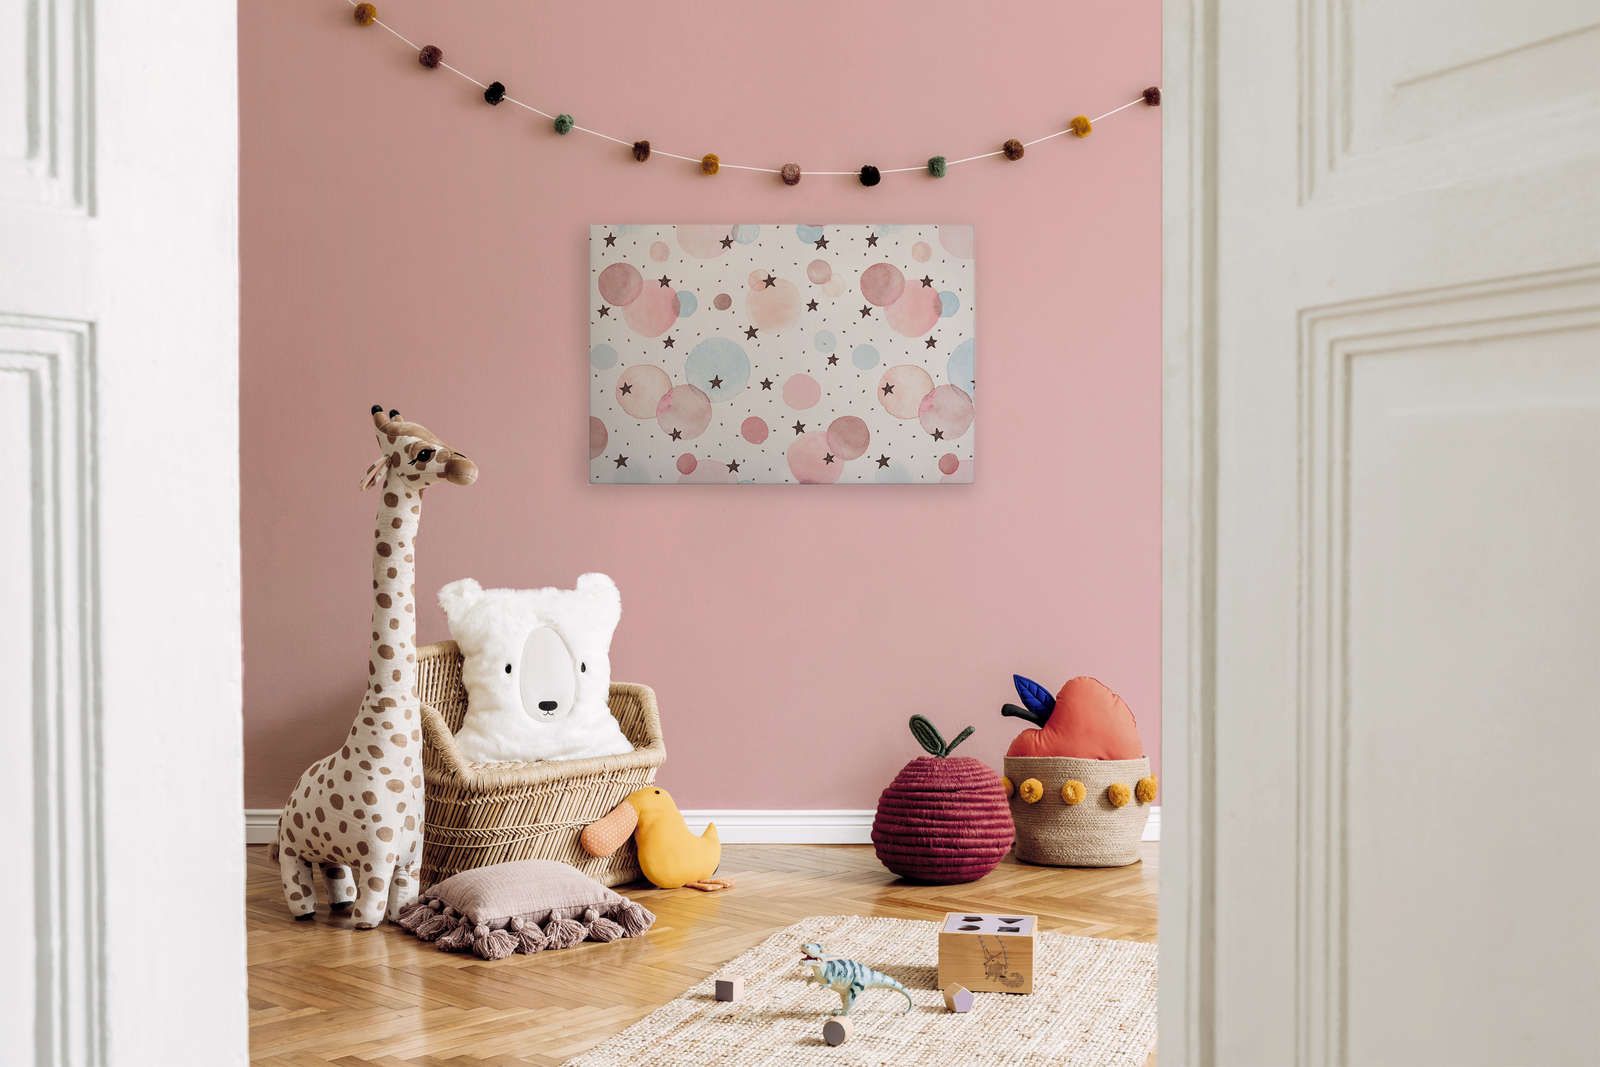             Leinwand fürs Kinderzimmer mit Sternen, Punkten und Kreisen – 90 cm x 60 cm
        